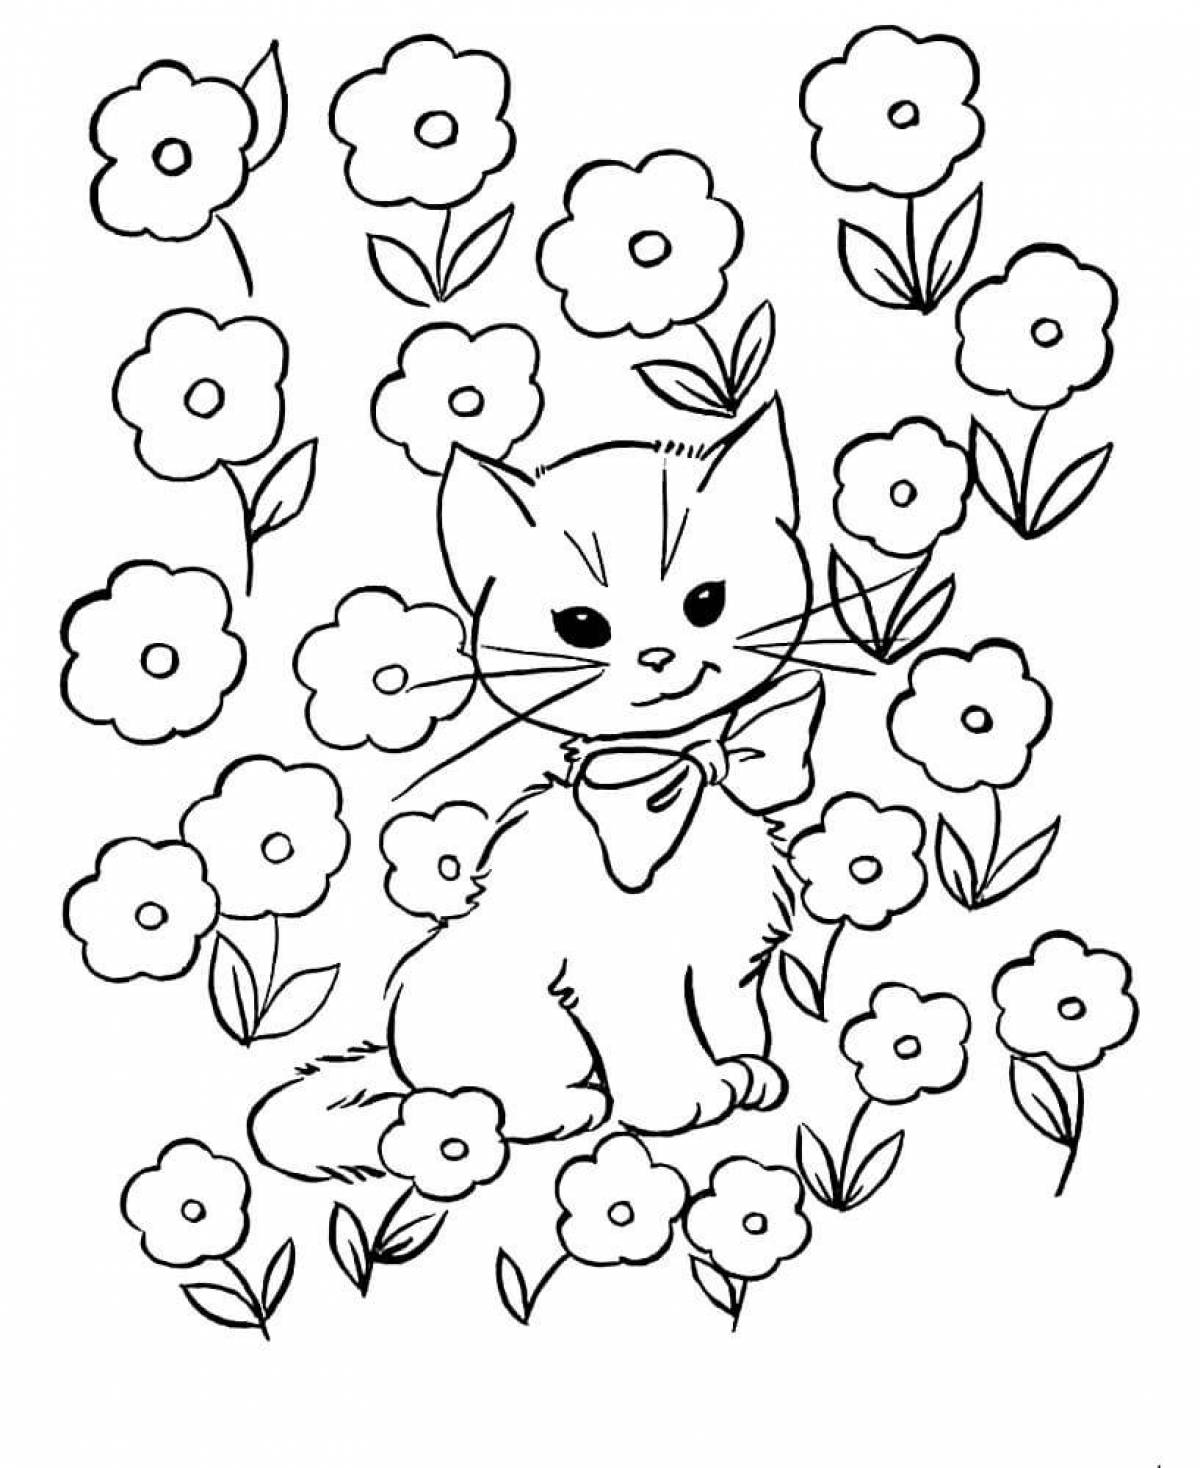 Раскраска котенок для детей 4 5 лет. Кошки. Раскраска. Раскраска цветочек. Кошка раскраска для детей. Котик раскраска для детей.